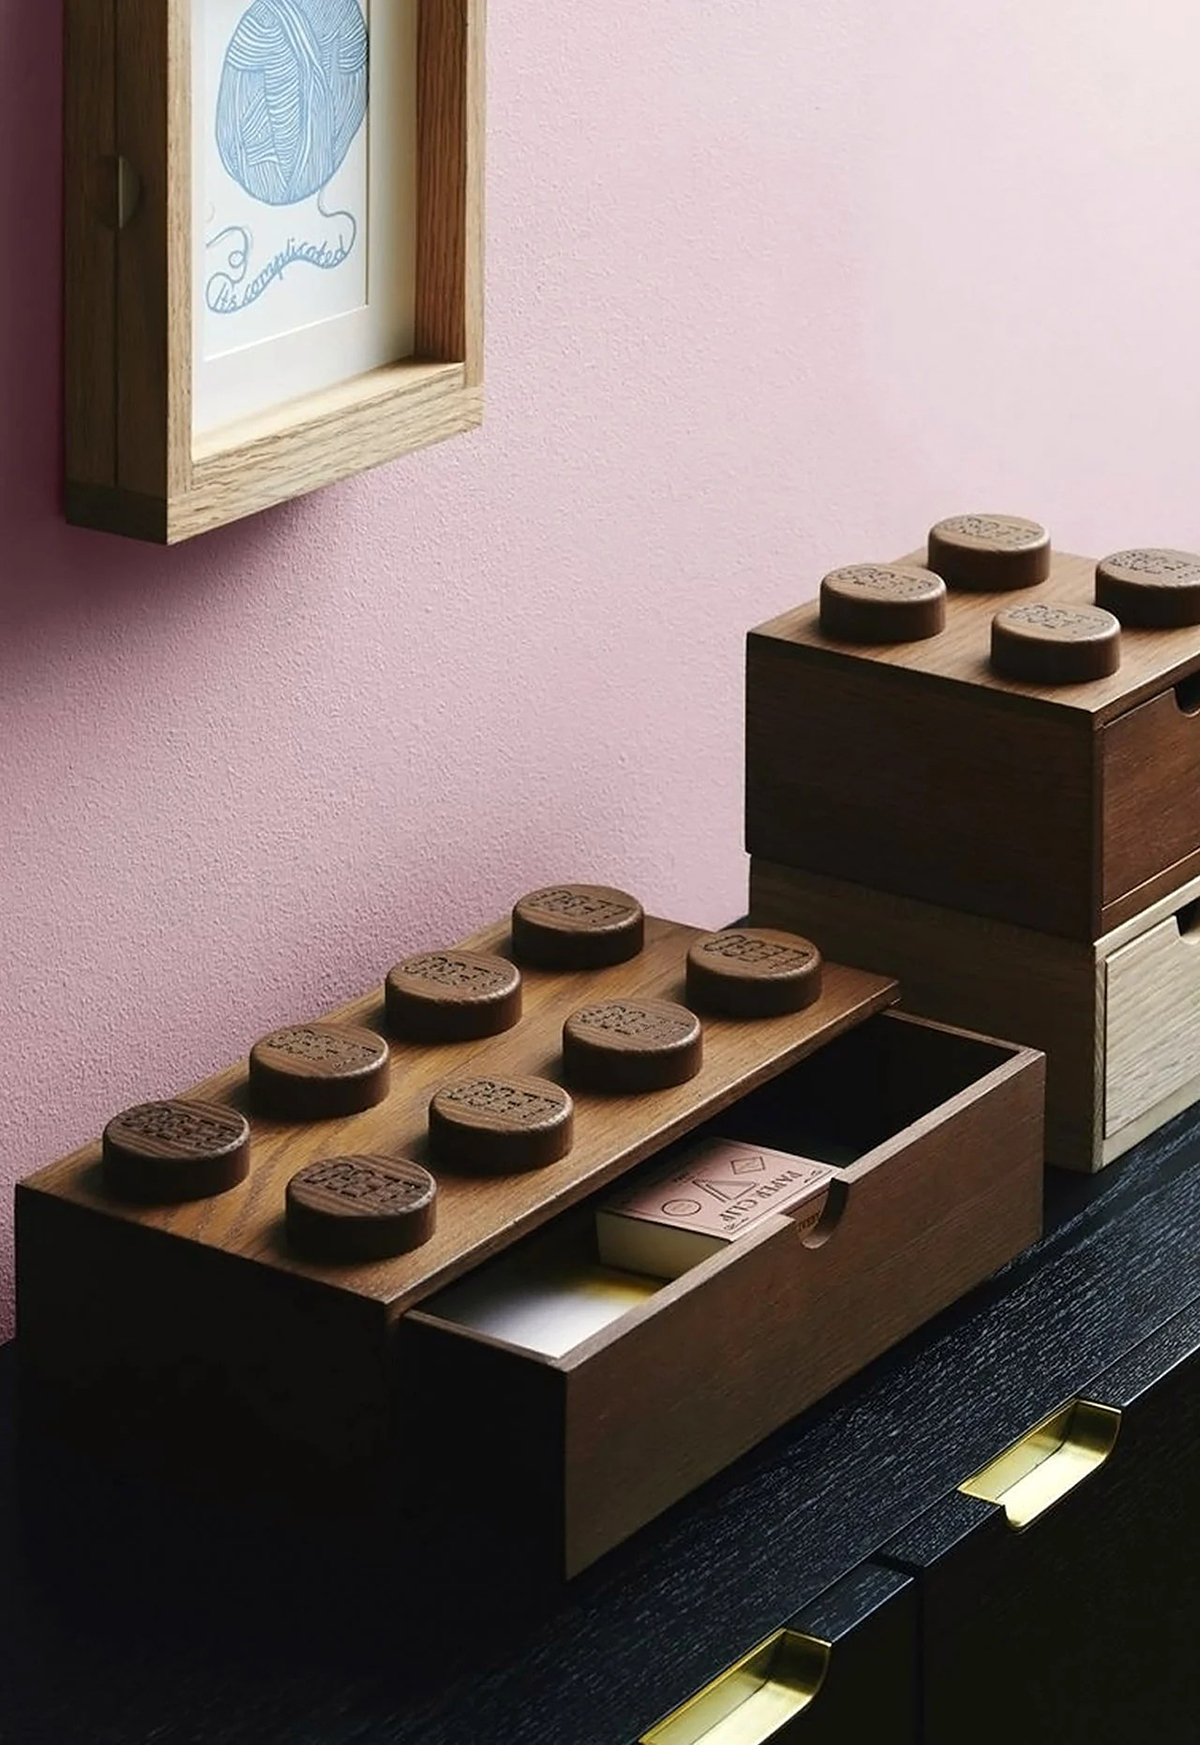 LEGO lance une gamme de petits meubles en bois qui s'imbriquent